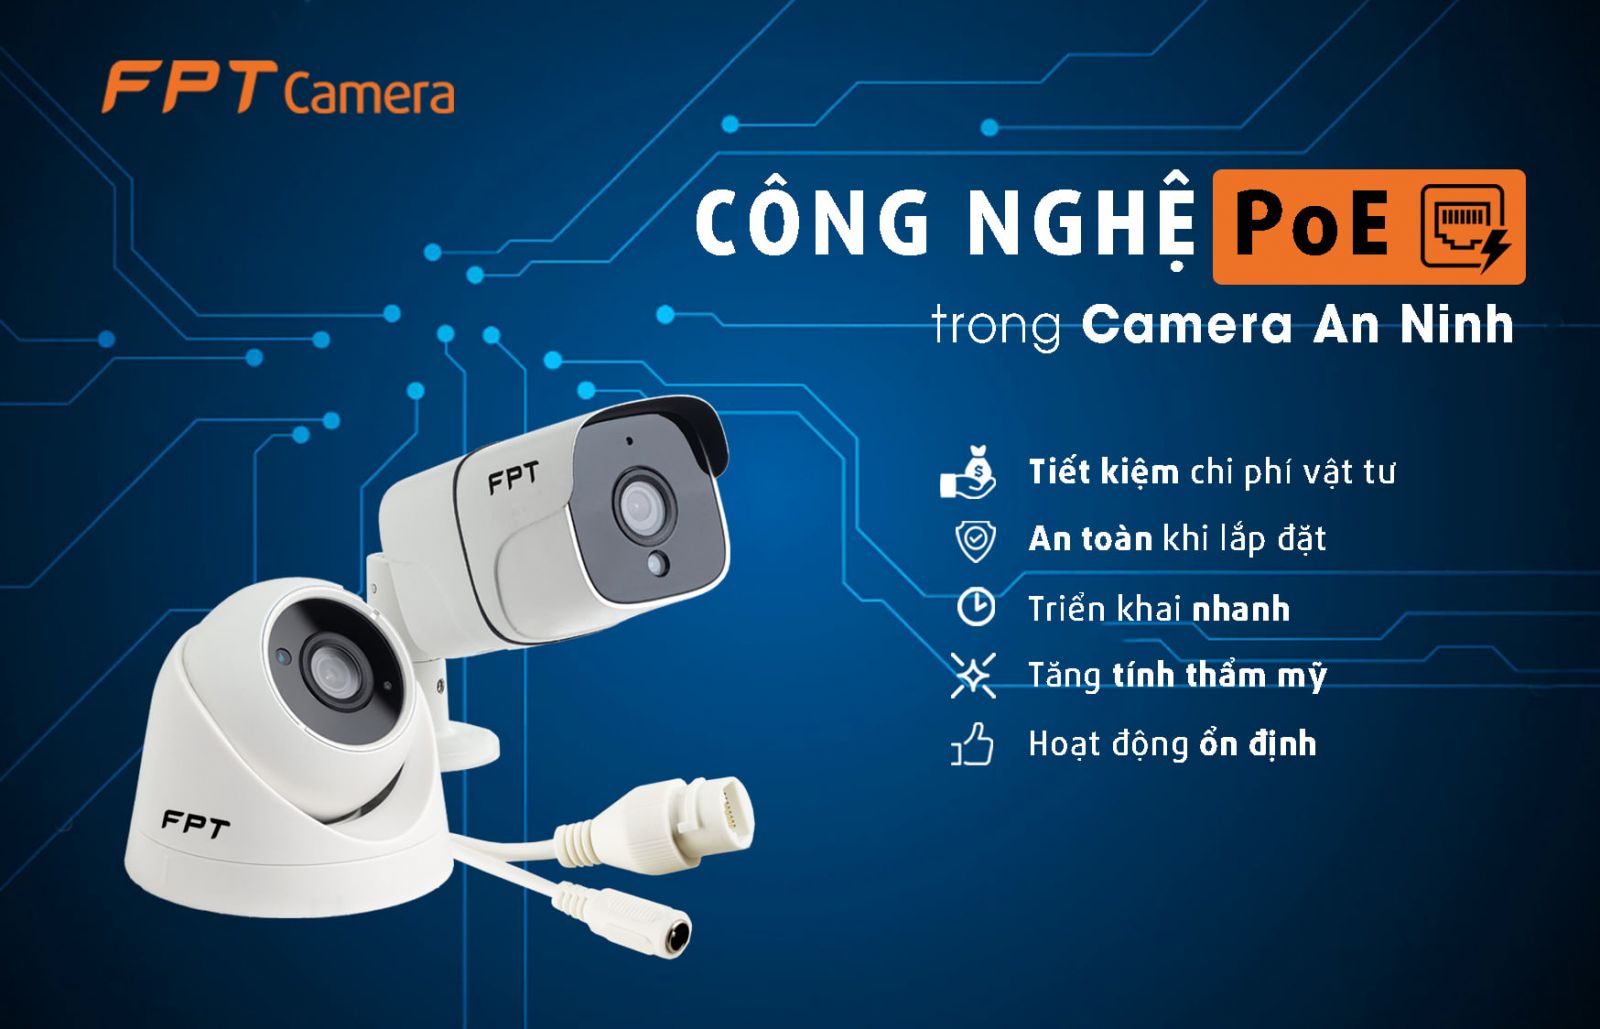 Lắp đặt camera FPT cho gia đình tại Quảng Nam